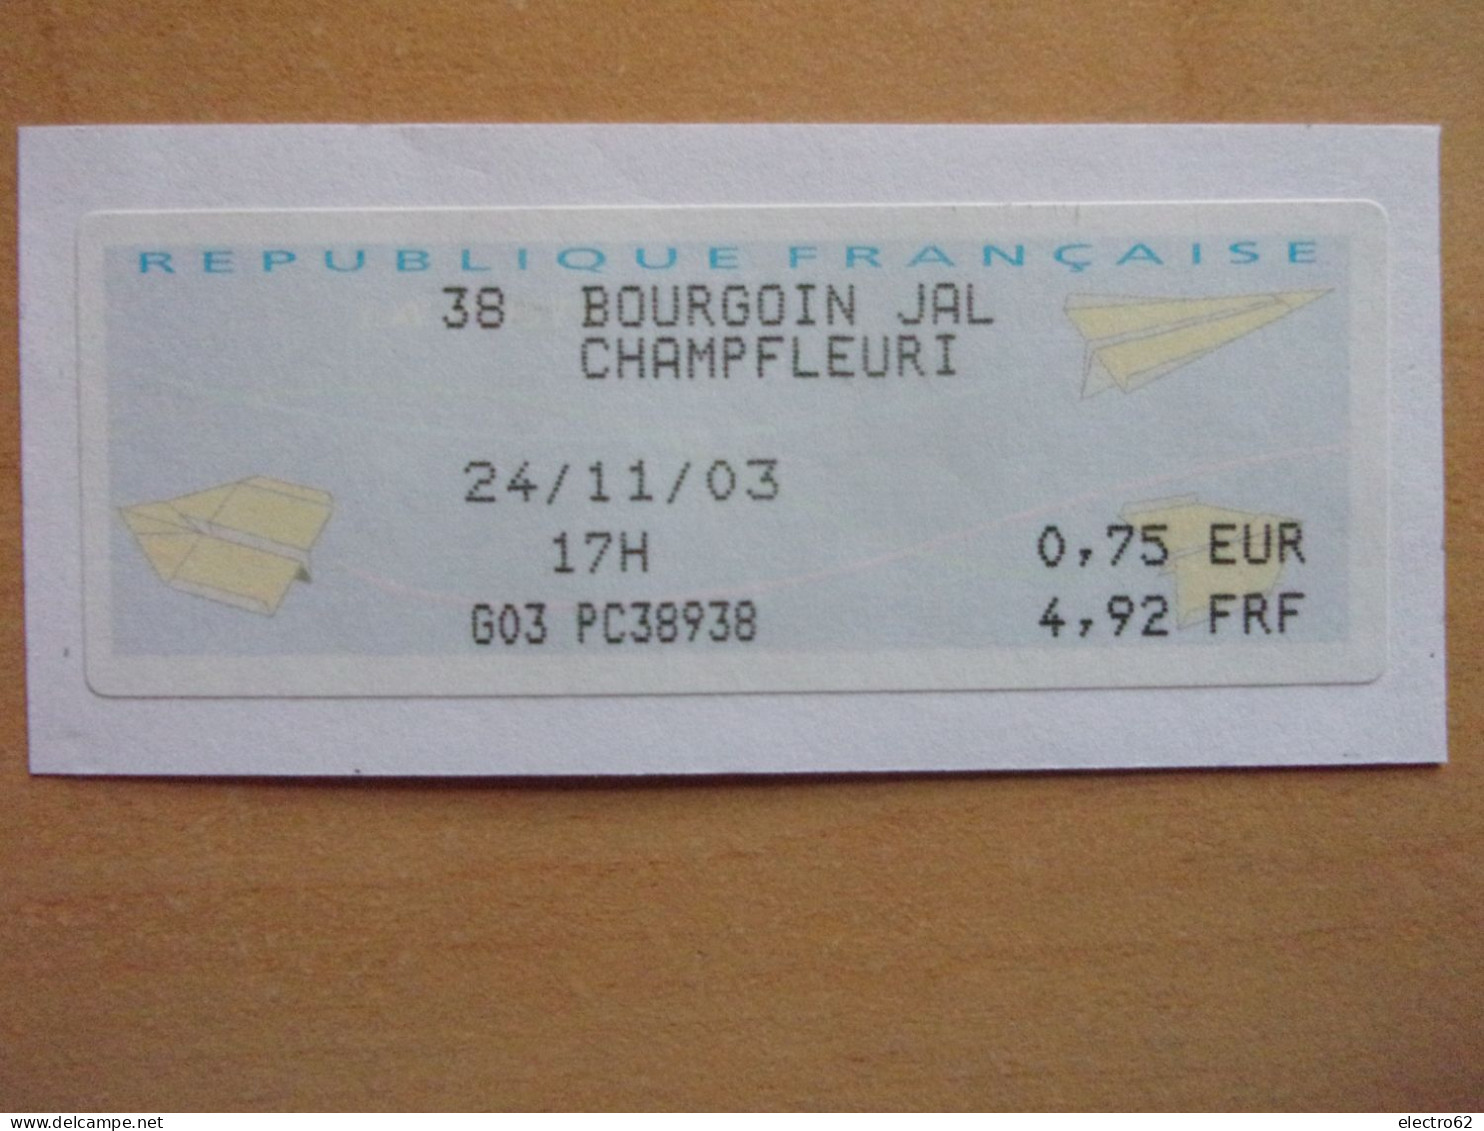 France Vignette BOURGOIN JALLIEU CHAMPFLEURI 24-11-2003 G03 PC 38938 Avion En Papier  Paper Plane - 2000 « Avions En Papier »